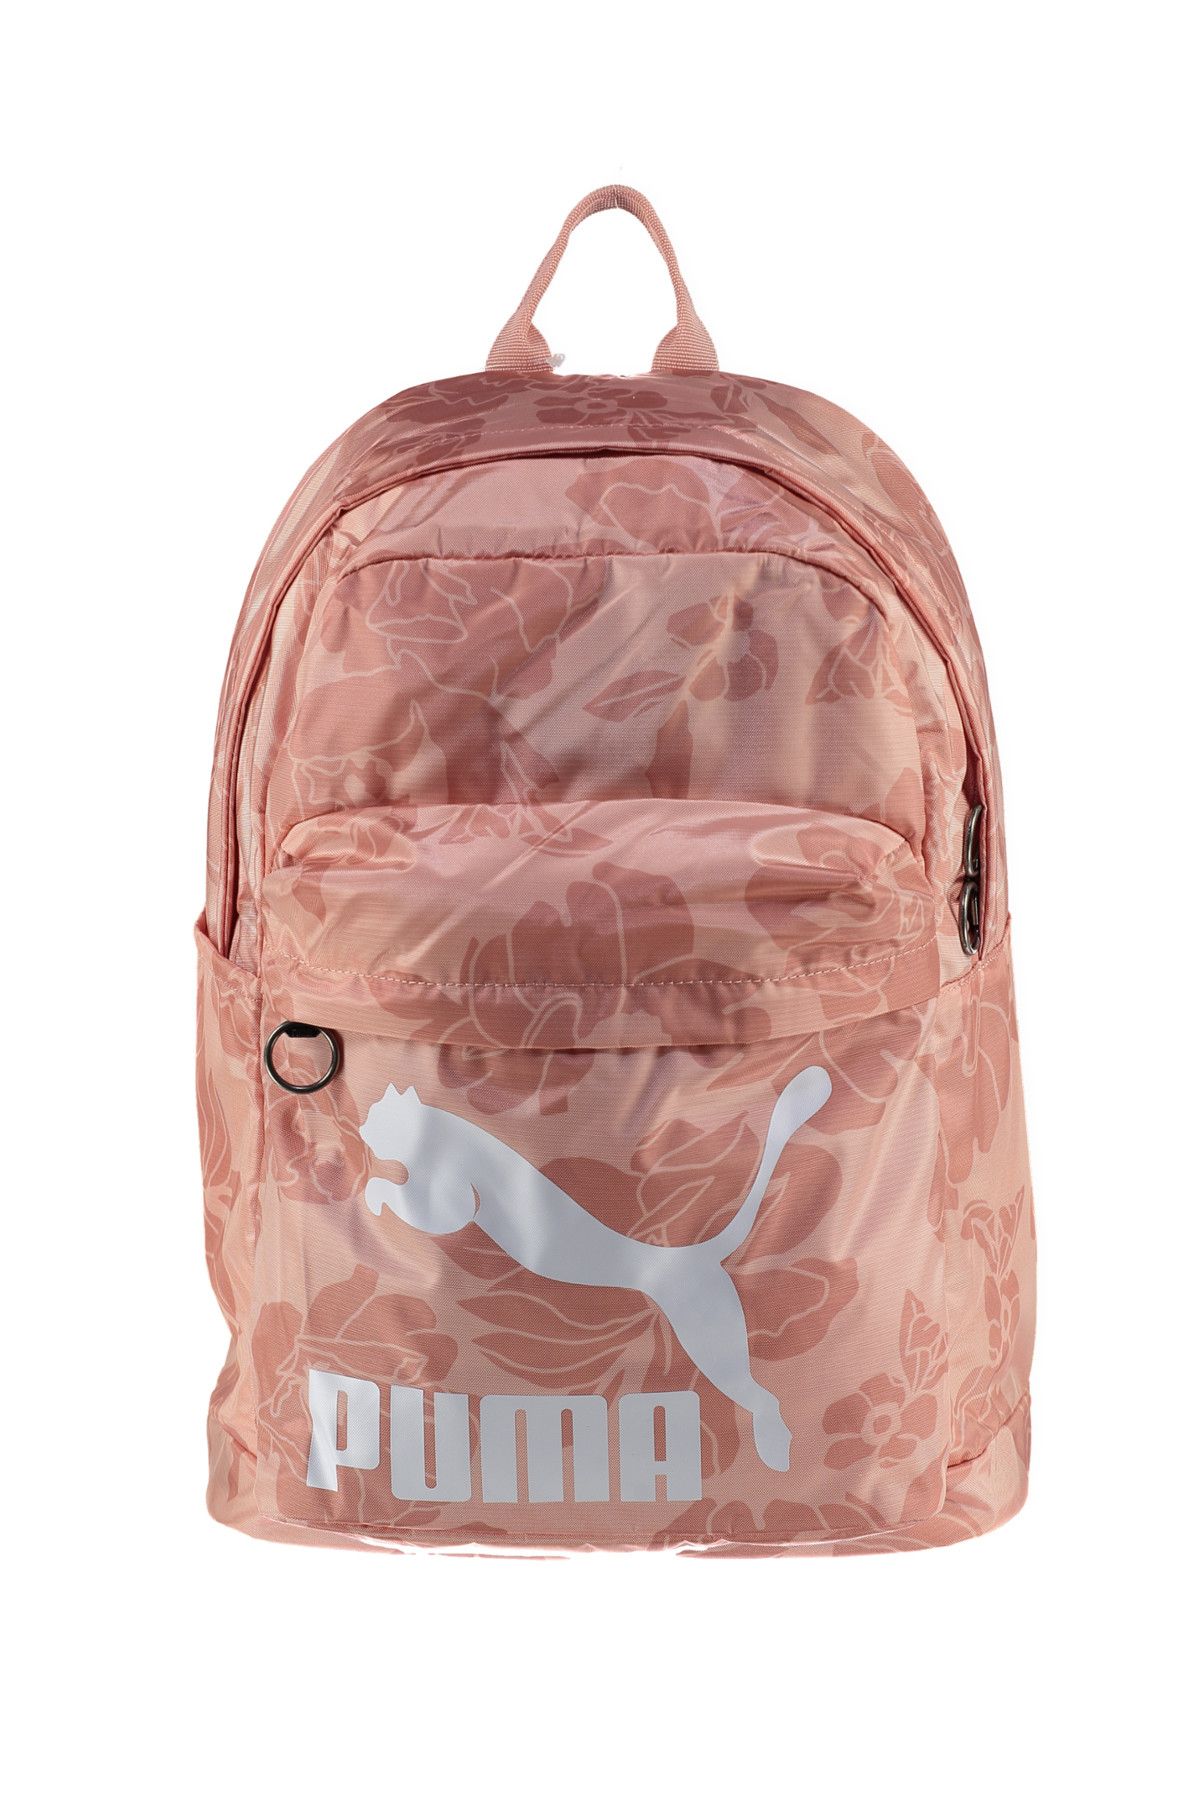 Puma Unisex Sırt Çantası - Originals Backpack - 07479907